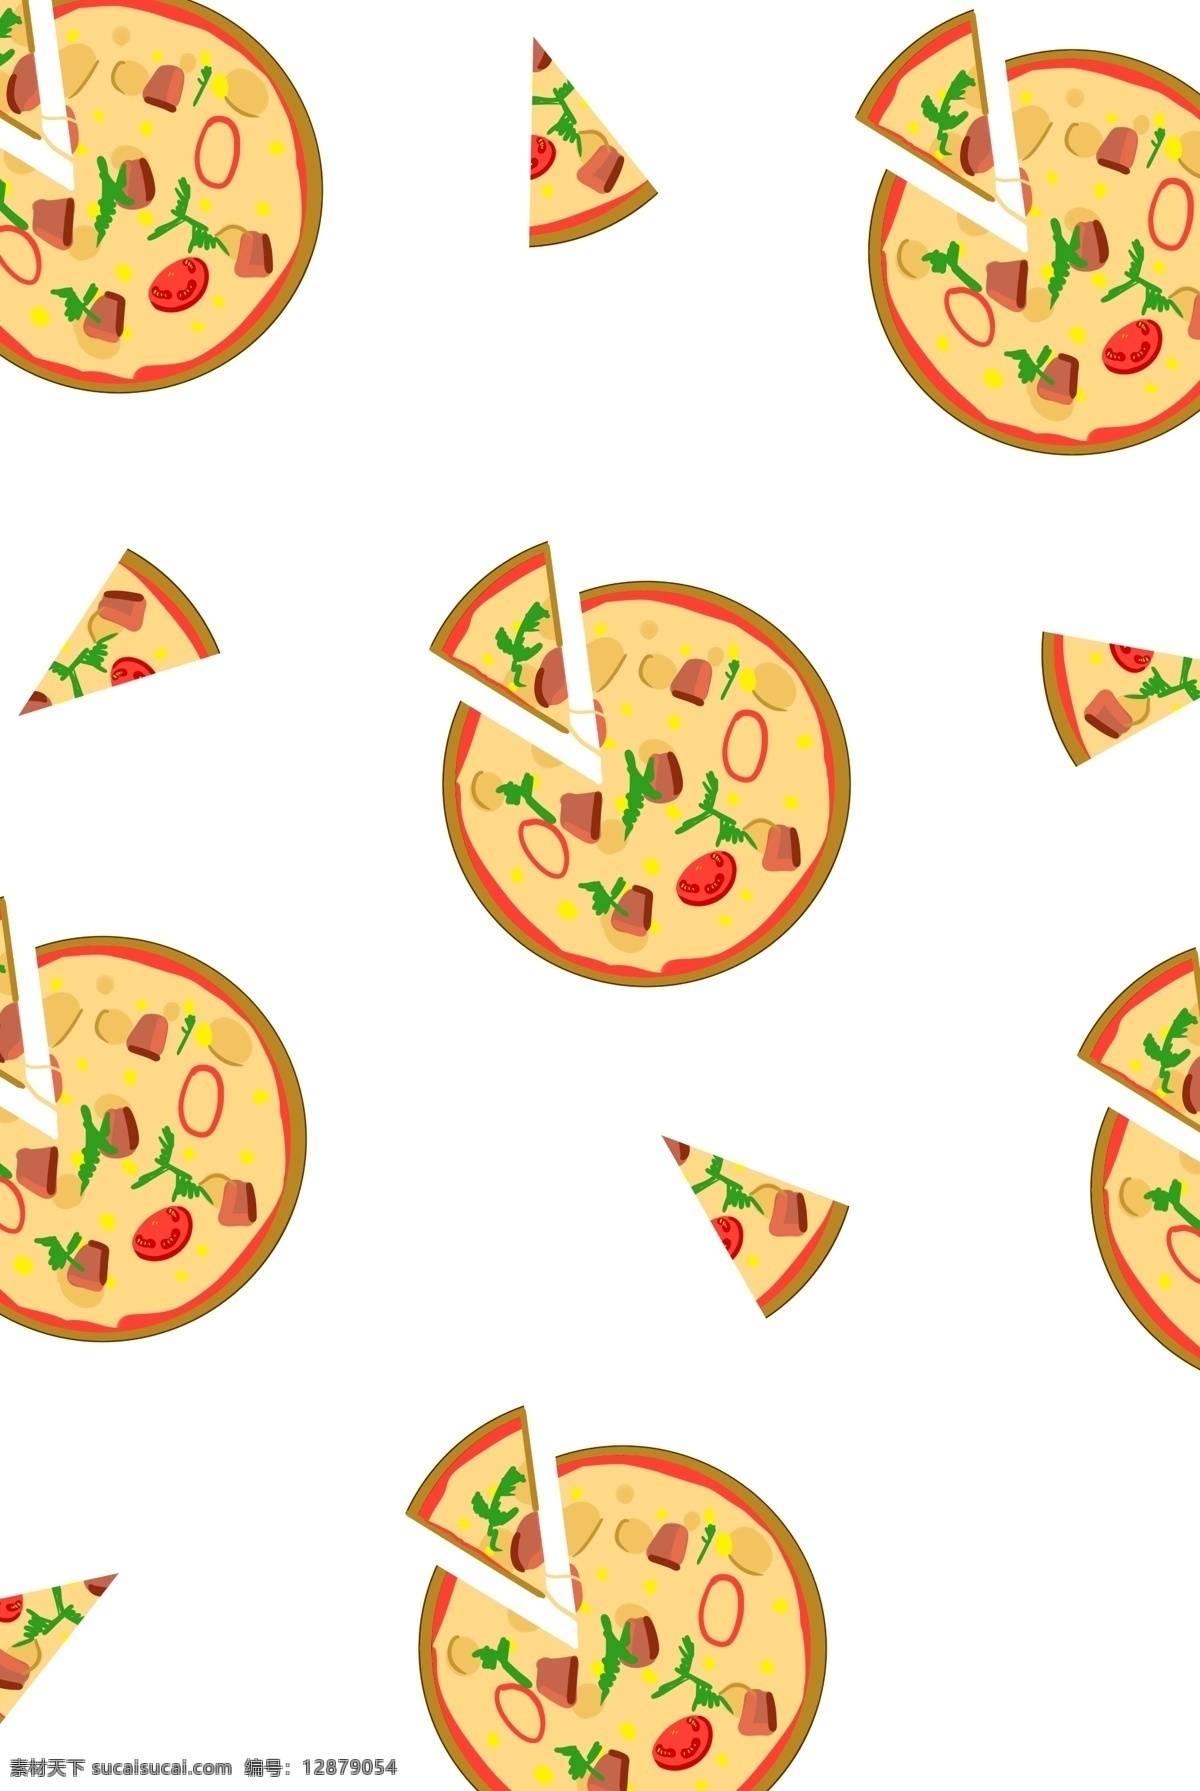 手绘 披萨 底纹 插画 底纹披萨 卡通插画 手绘插画 底纹插画 底纹图画 美味的披萨 水果披萨 好吃的披萨